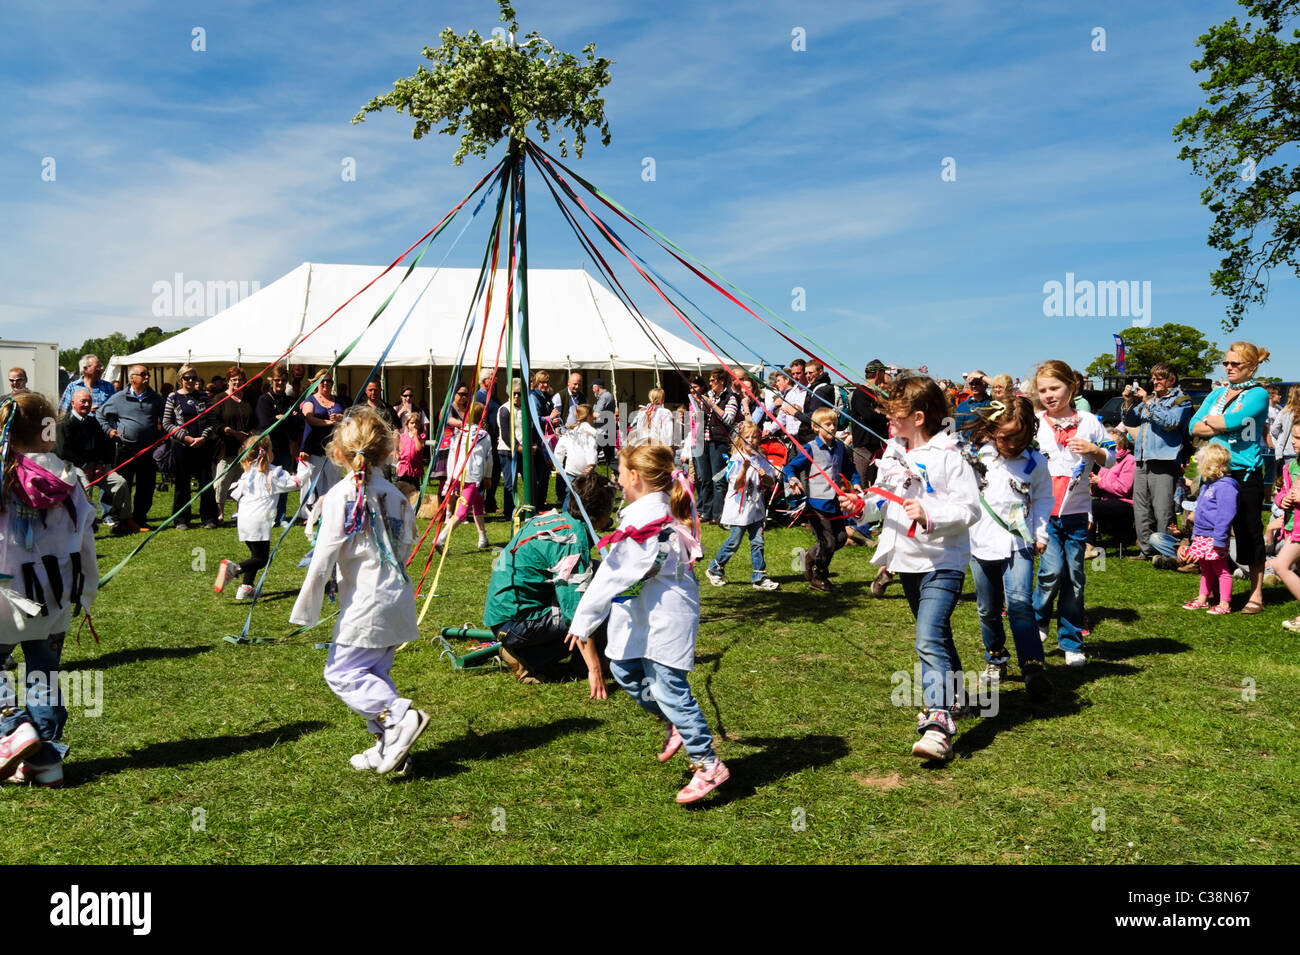 Les filles maypole dancing UK. Ecolières la danse autour du mât au niveau du ressort de la fête. Village Dilwyn show, Herefordshire. Banque D'Images